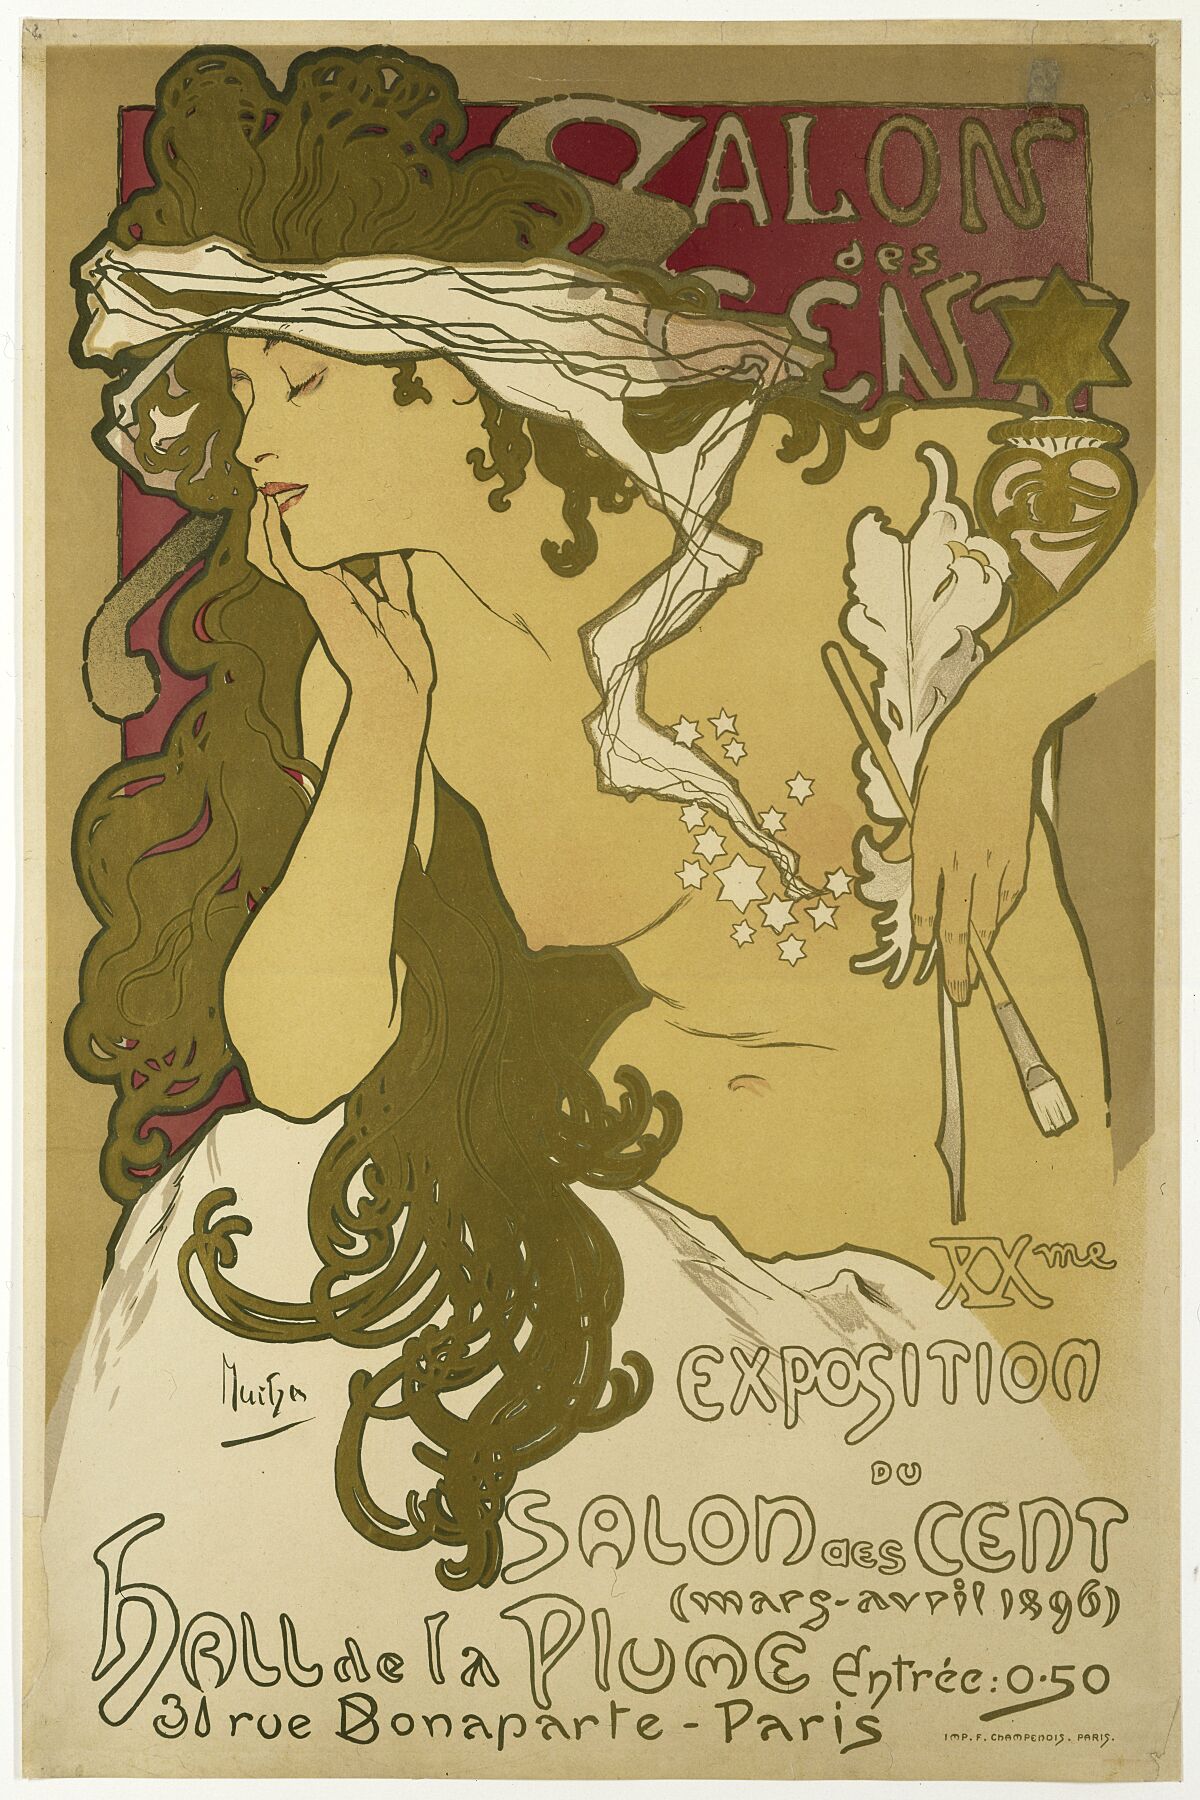 Salon des Cent, XXme Exposition du Salon des Cent (March-Avril 1896) Hall de la Plume, 31 rue Bonaparte, Paris., Alfons Maria Mucha, 1896